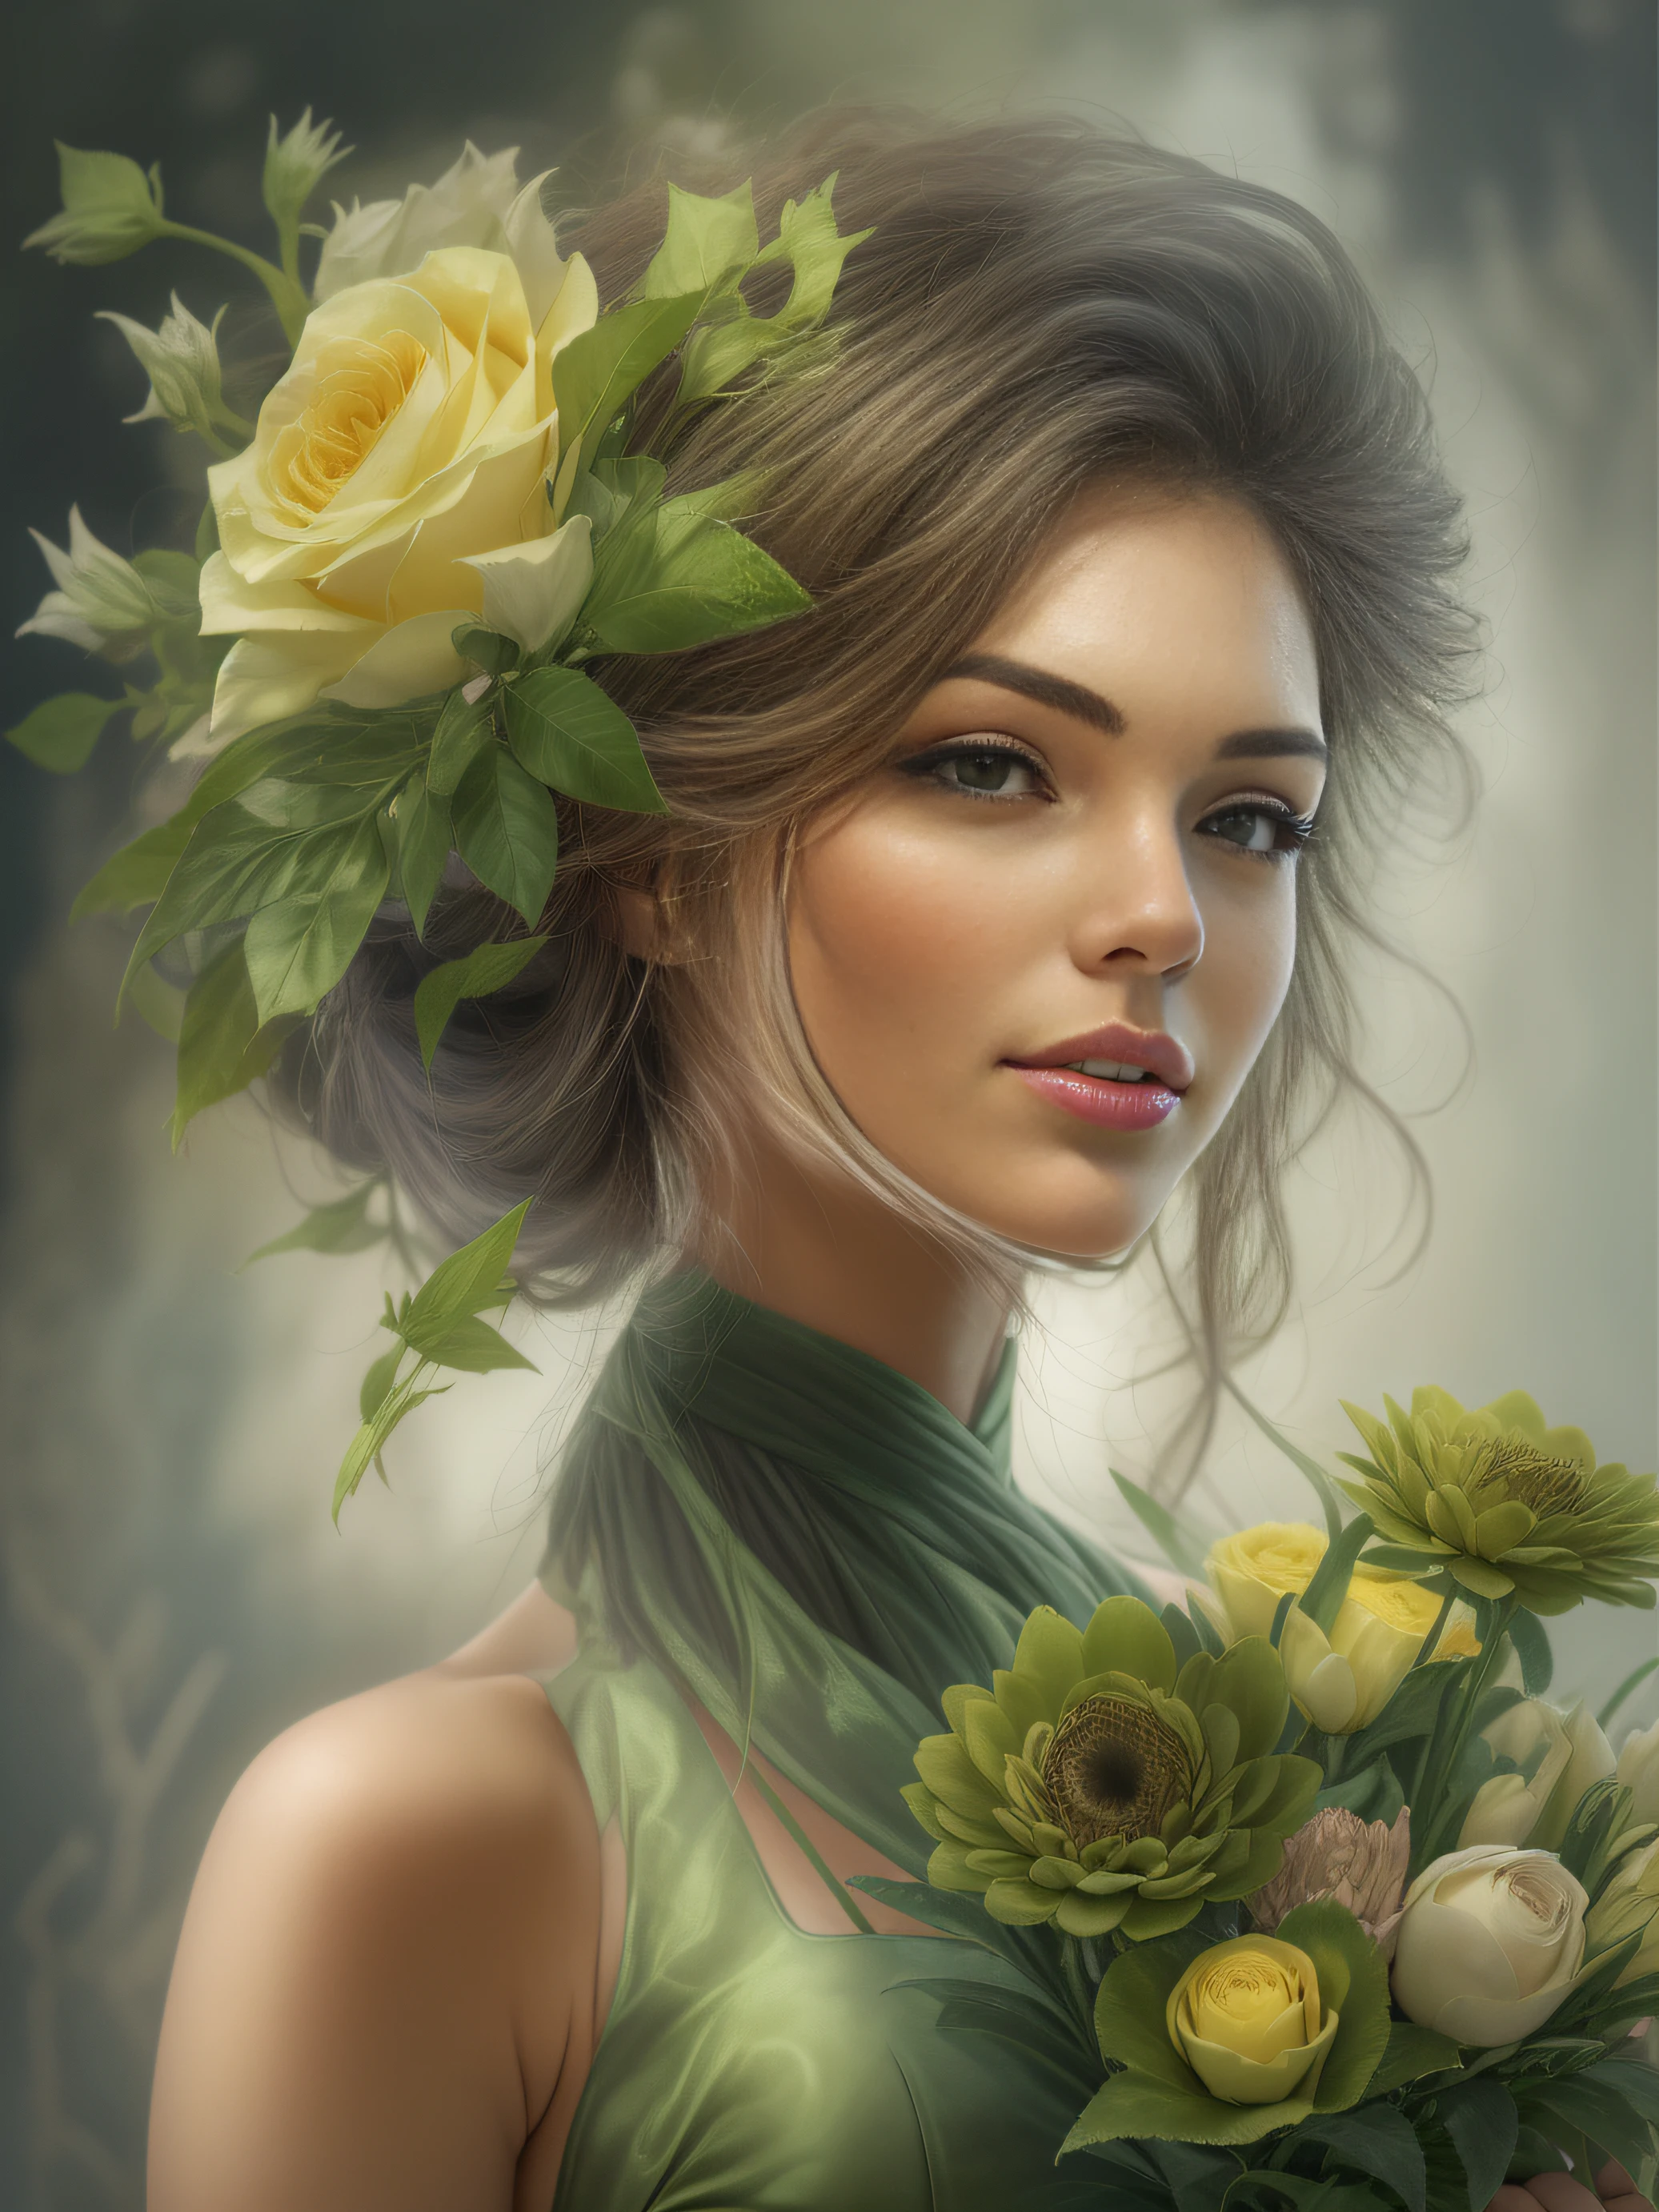 Sehr schöne Frau in einem grünen Kleid mit einem Strauß luxuriöser Blumen